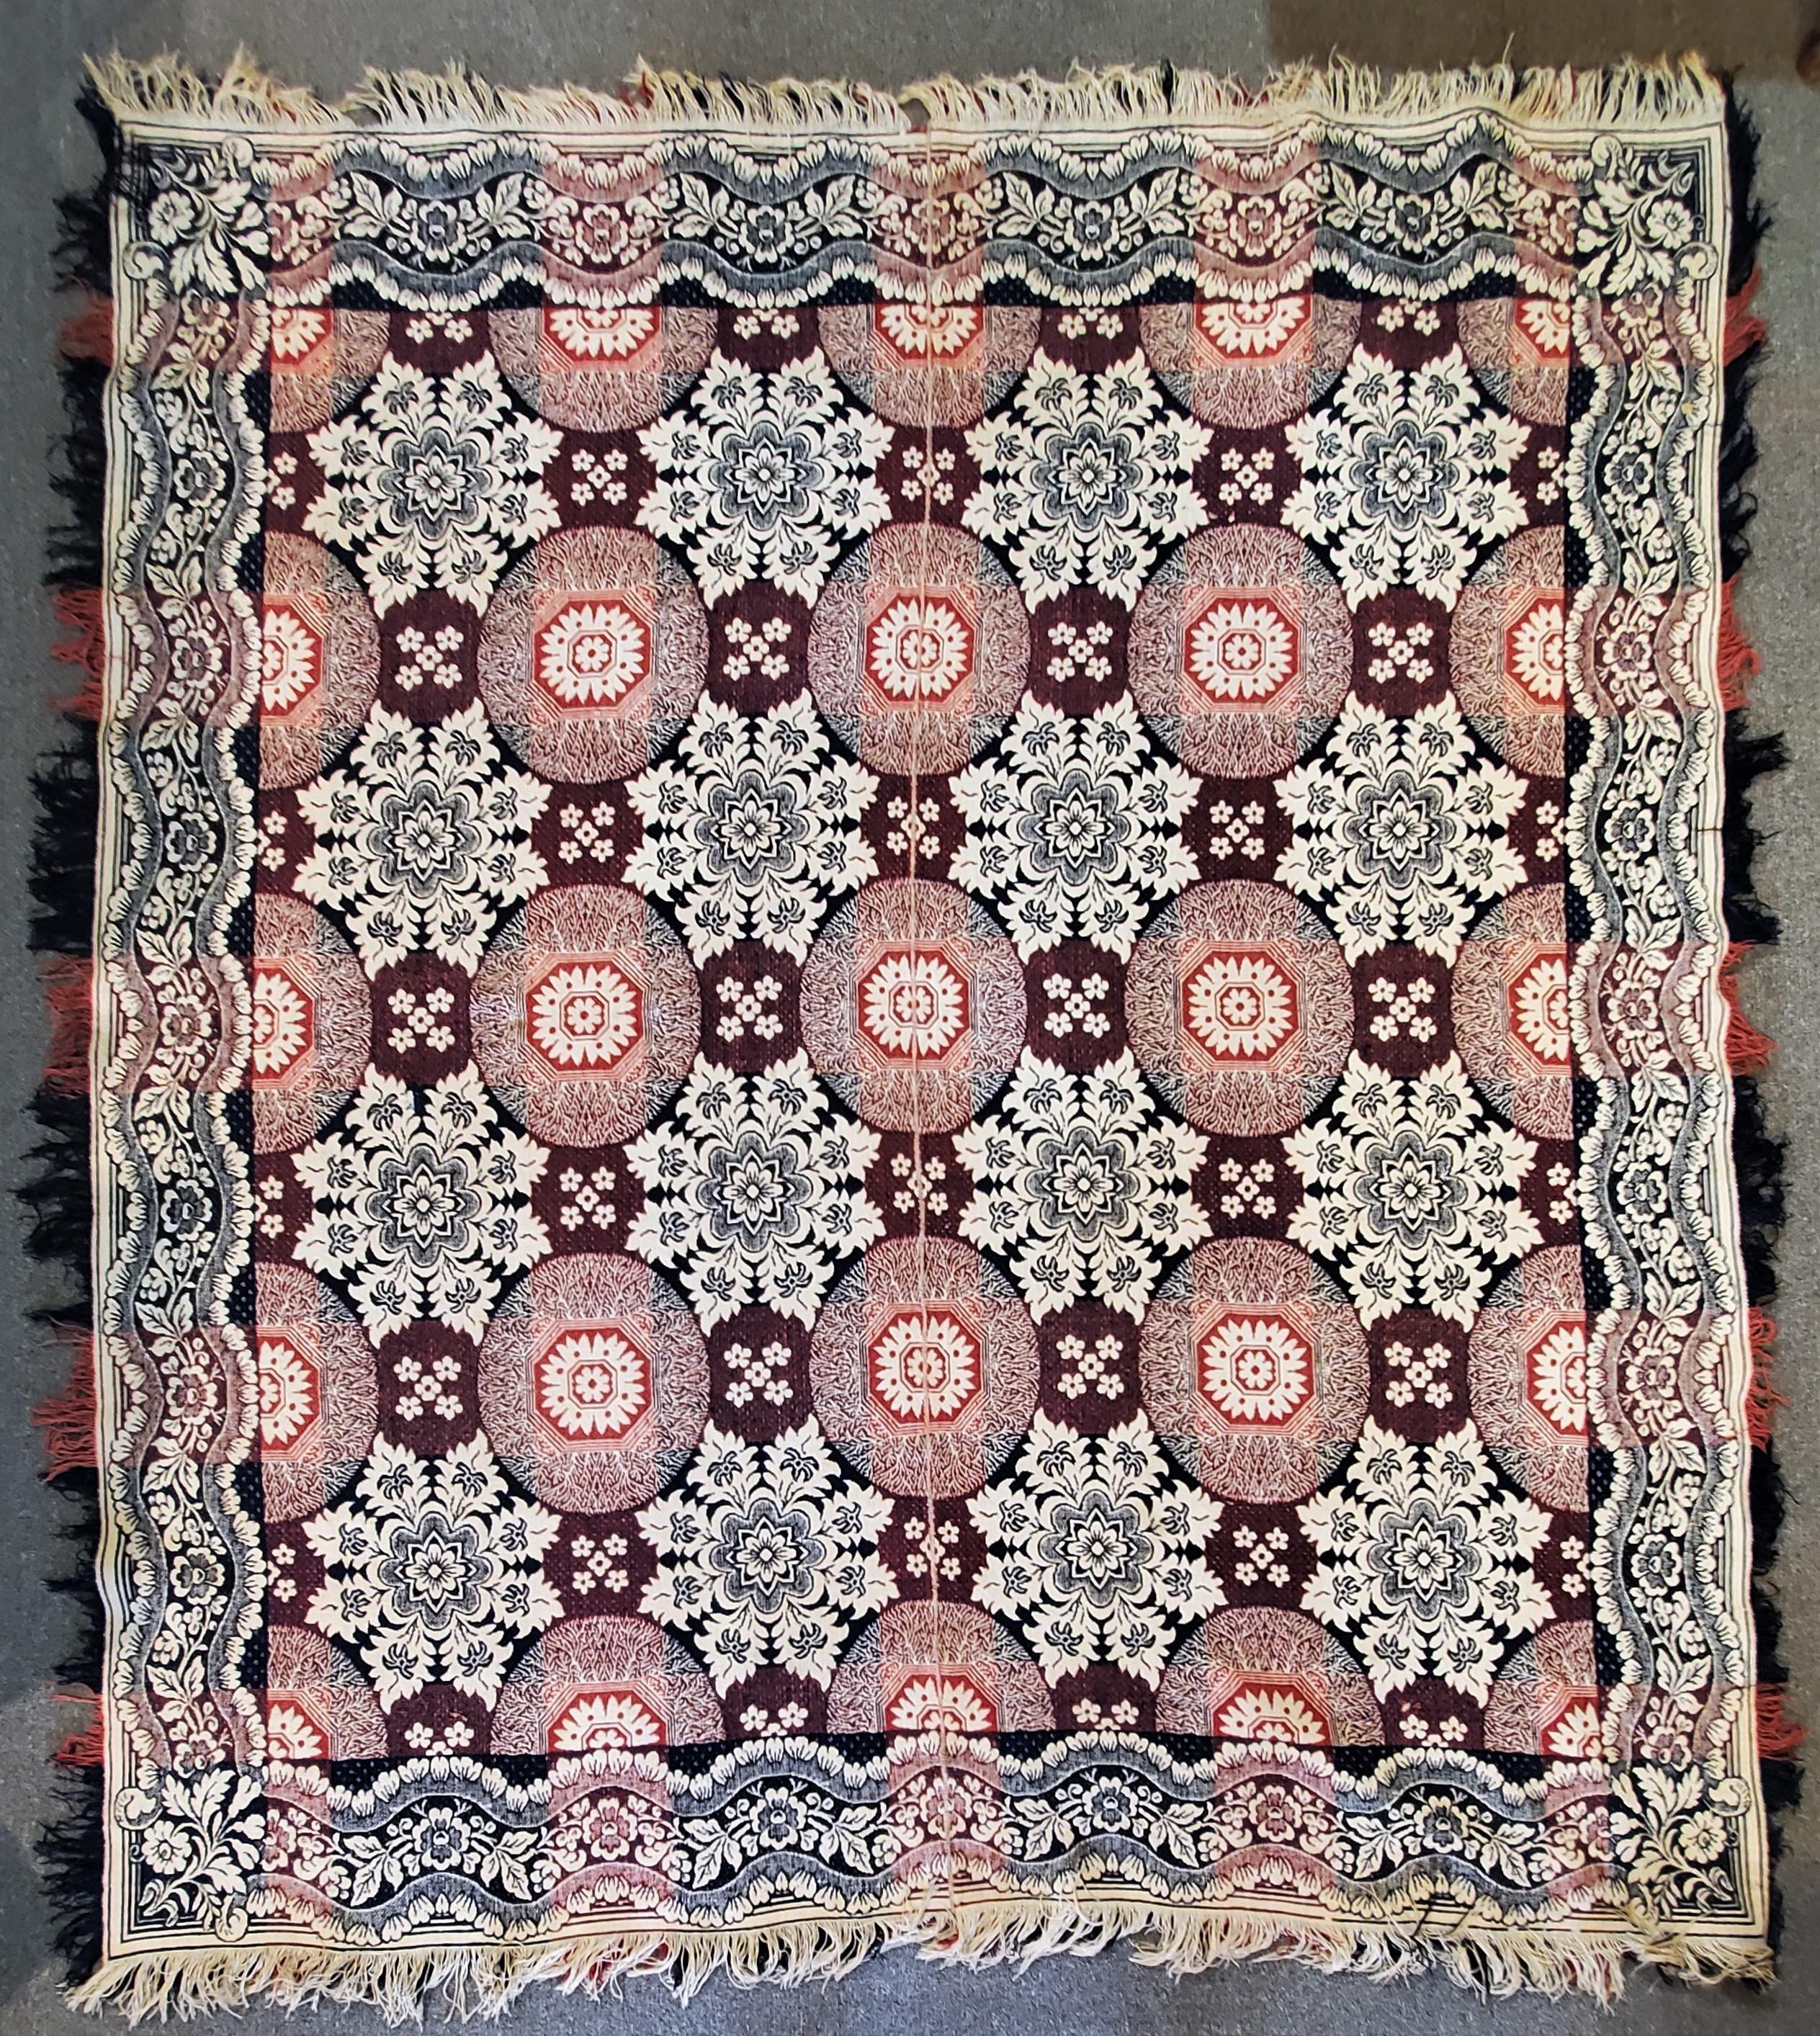 Diese mehrfarbige, handgewebte Decke aus dem 19. Jahrhundert mit den originalen Fransen ist in gutem Zustand.